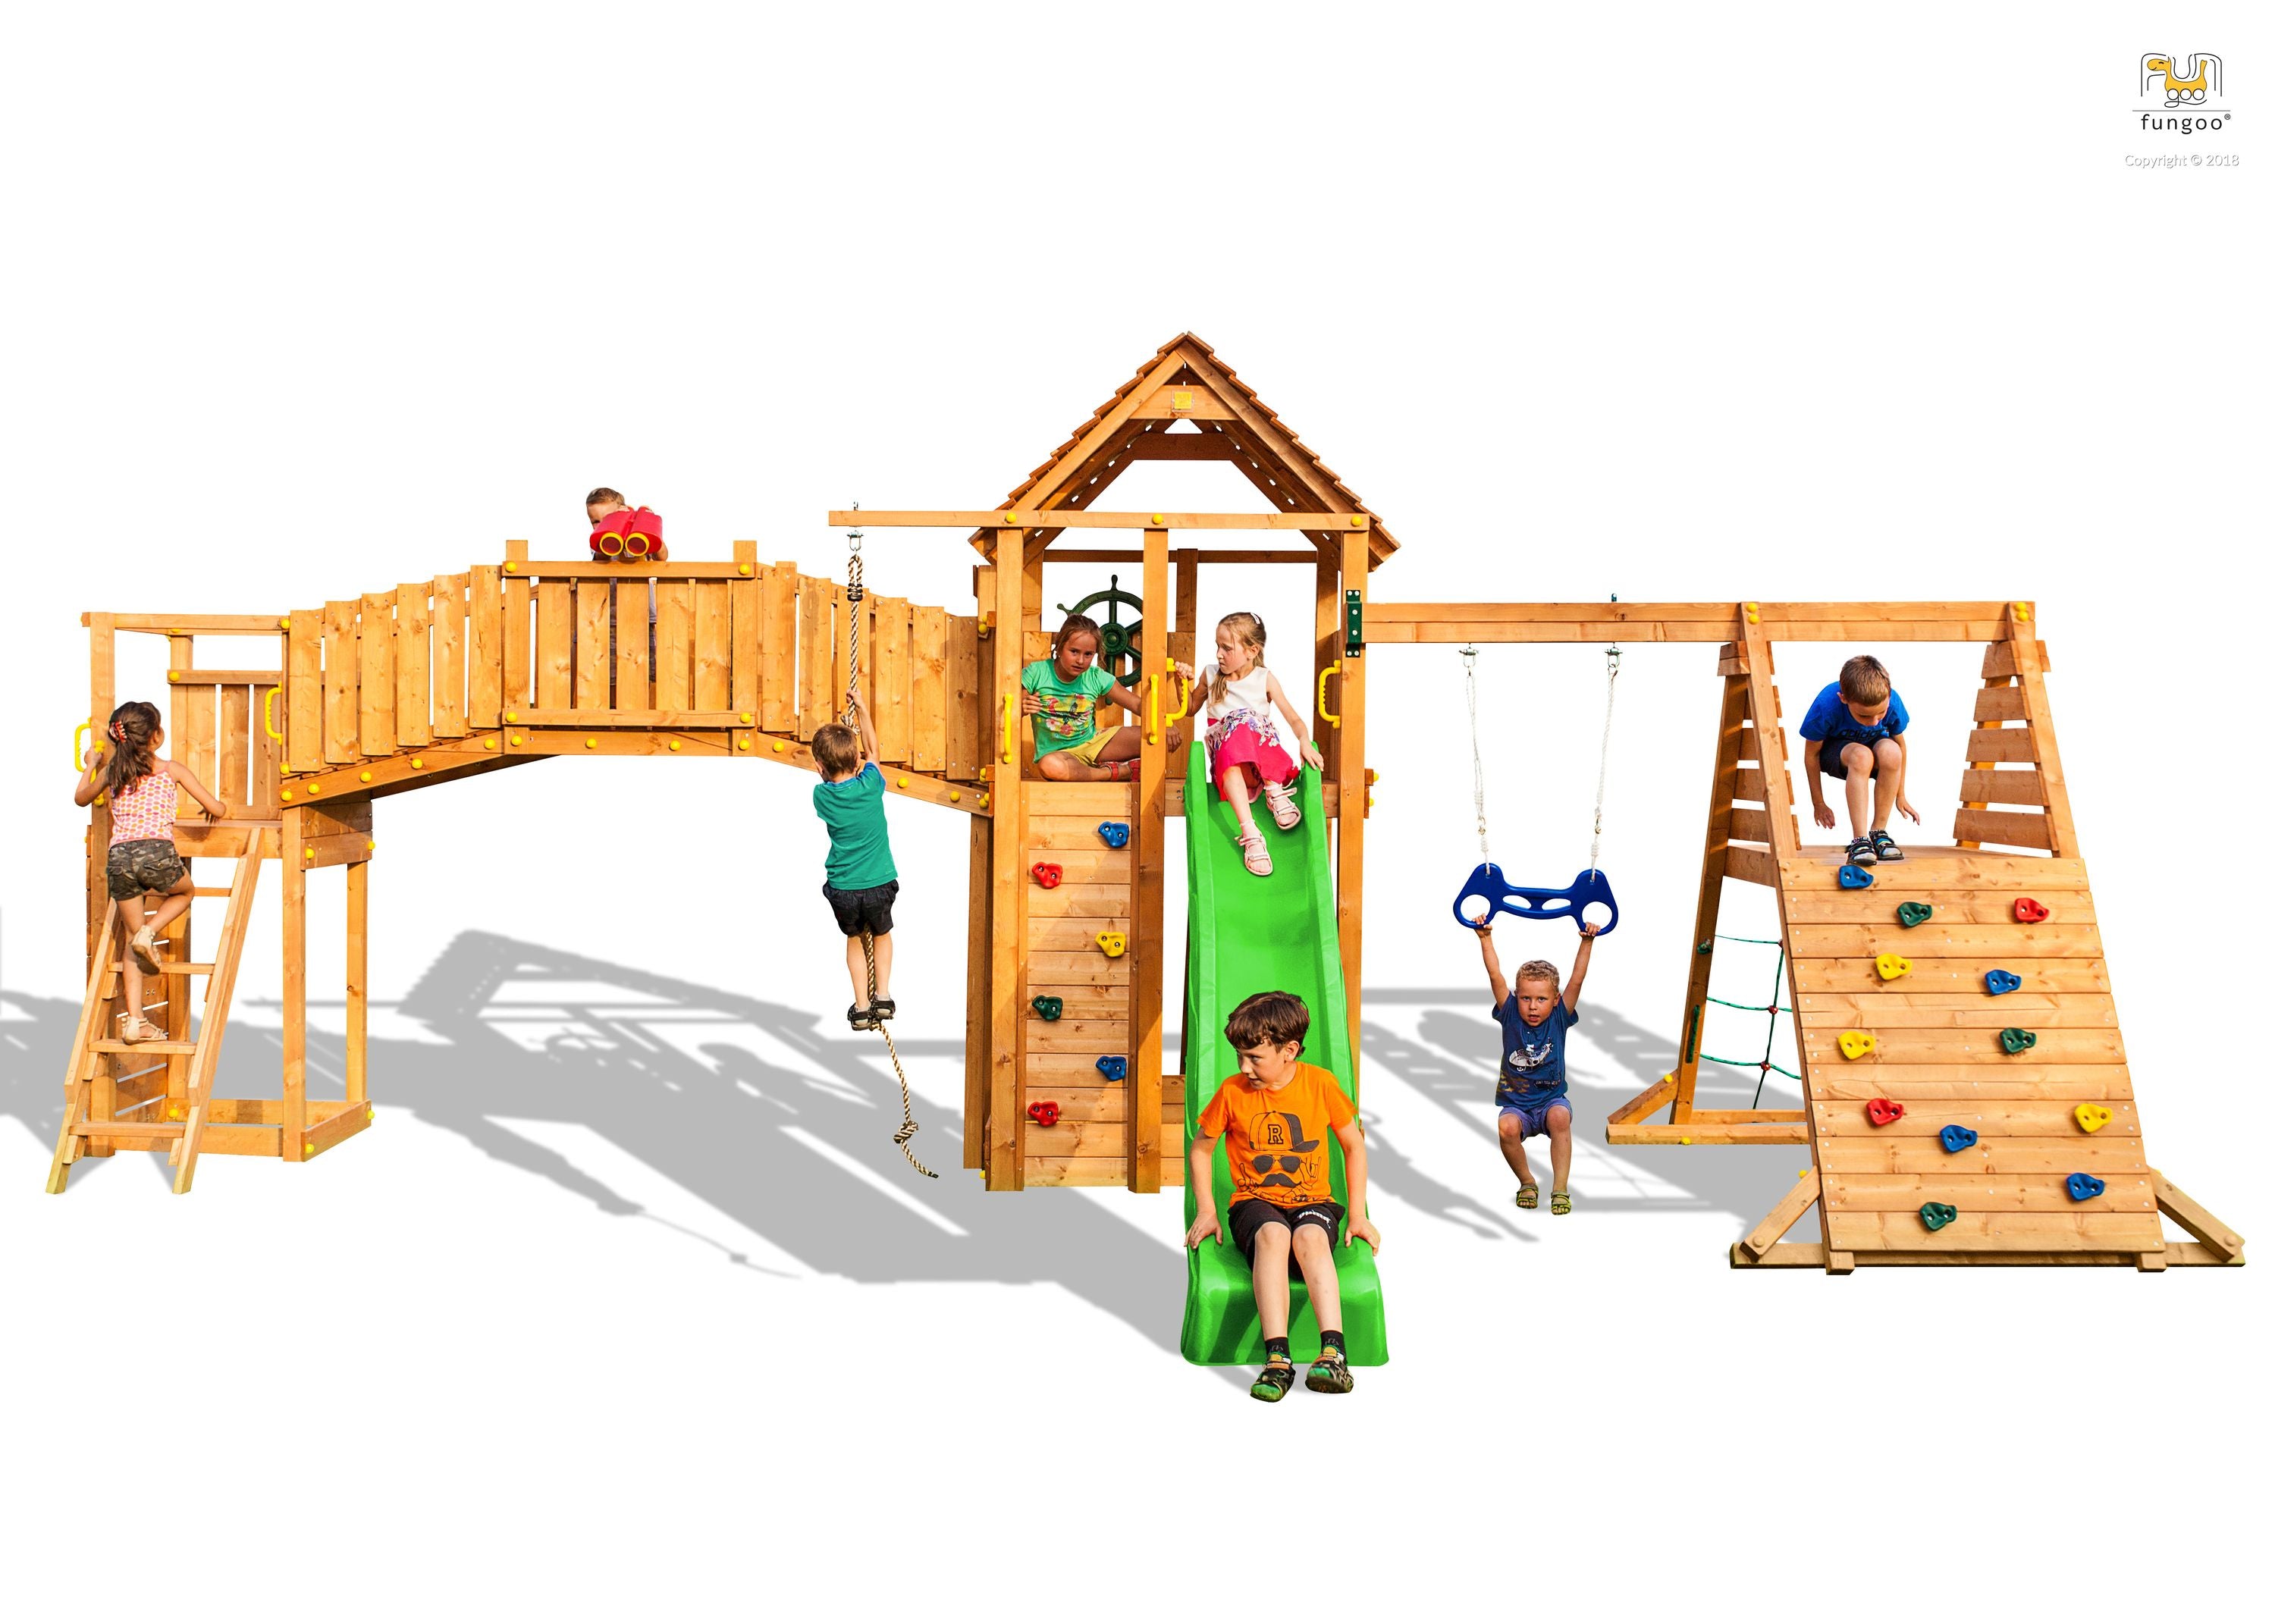 Spielturm Fungoo Maxi Set Fun Gym inkl. Rutsche, Schaukel, Kletterwände und Brücke